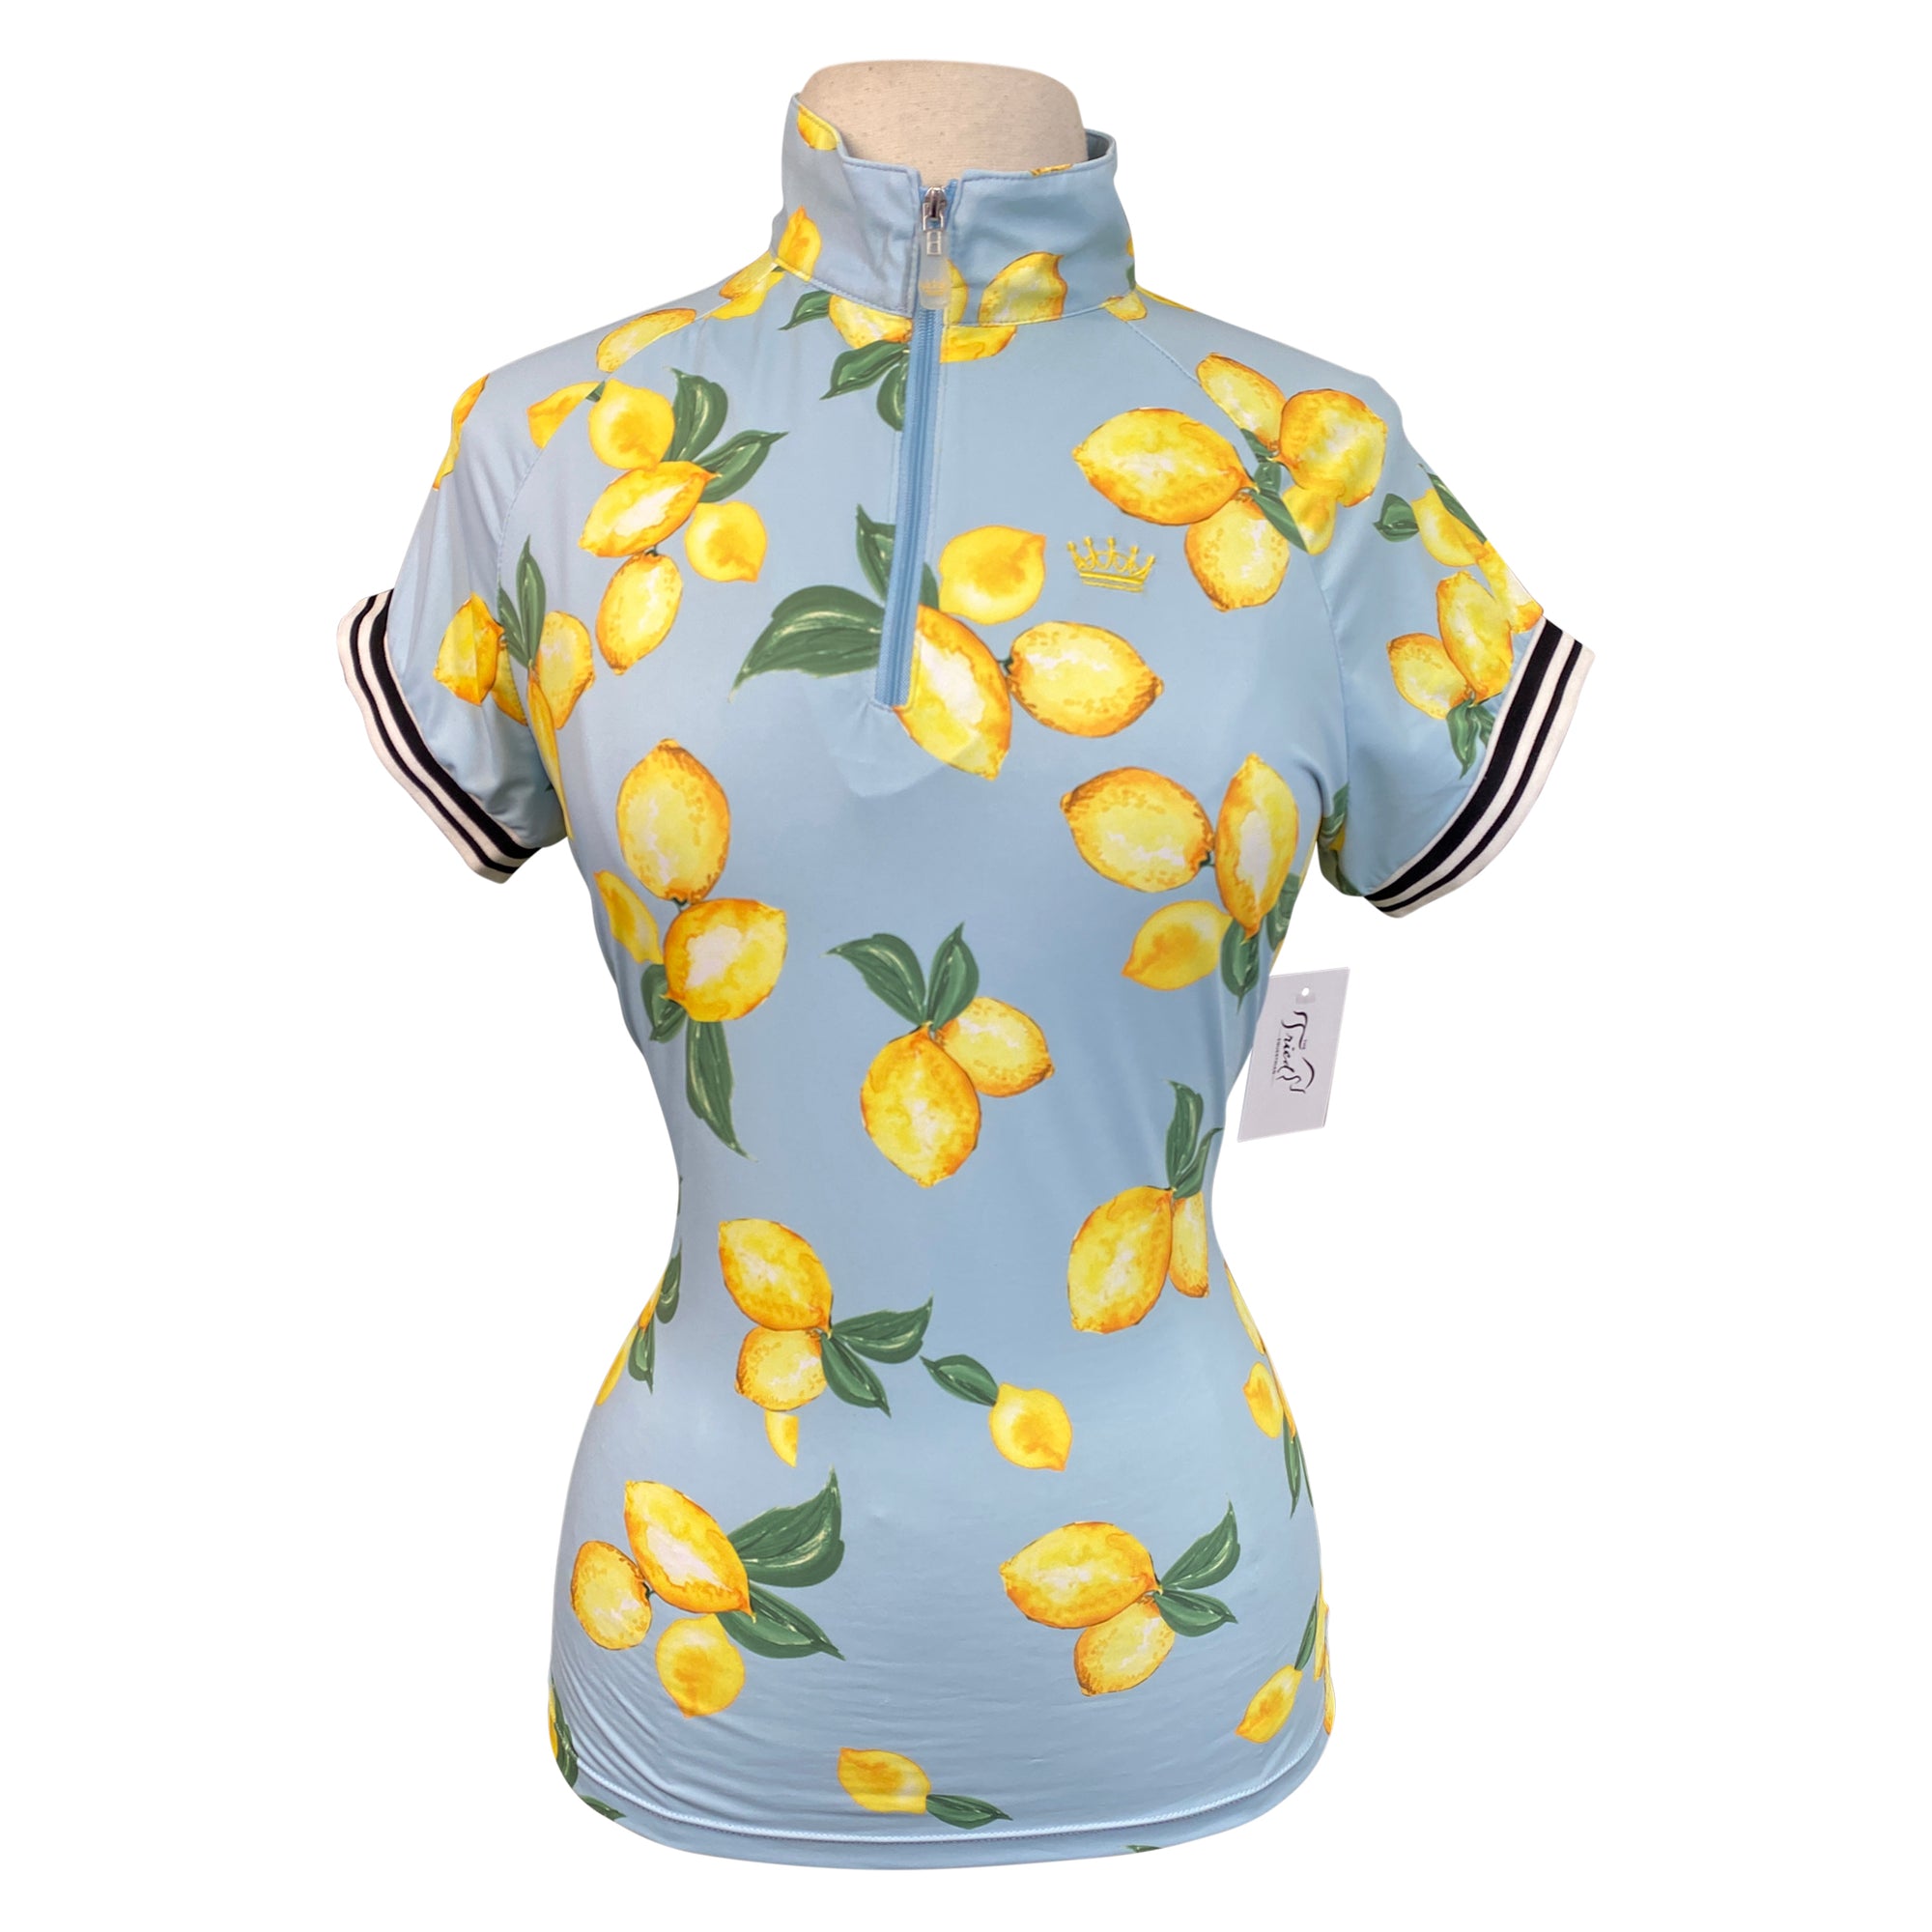 Kastel Denmark Cap Sleeve Shirt in Capri Lemons